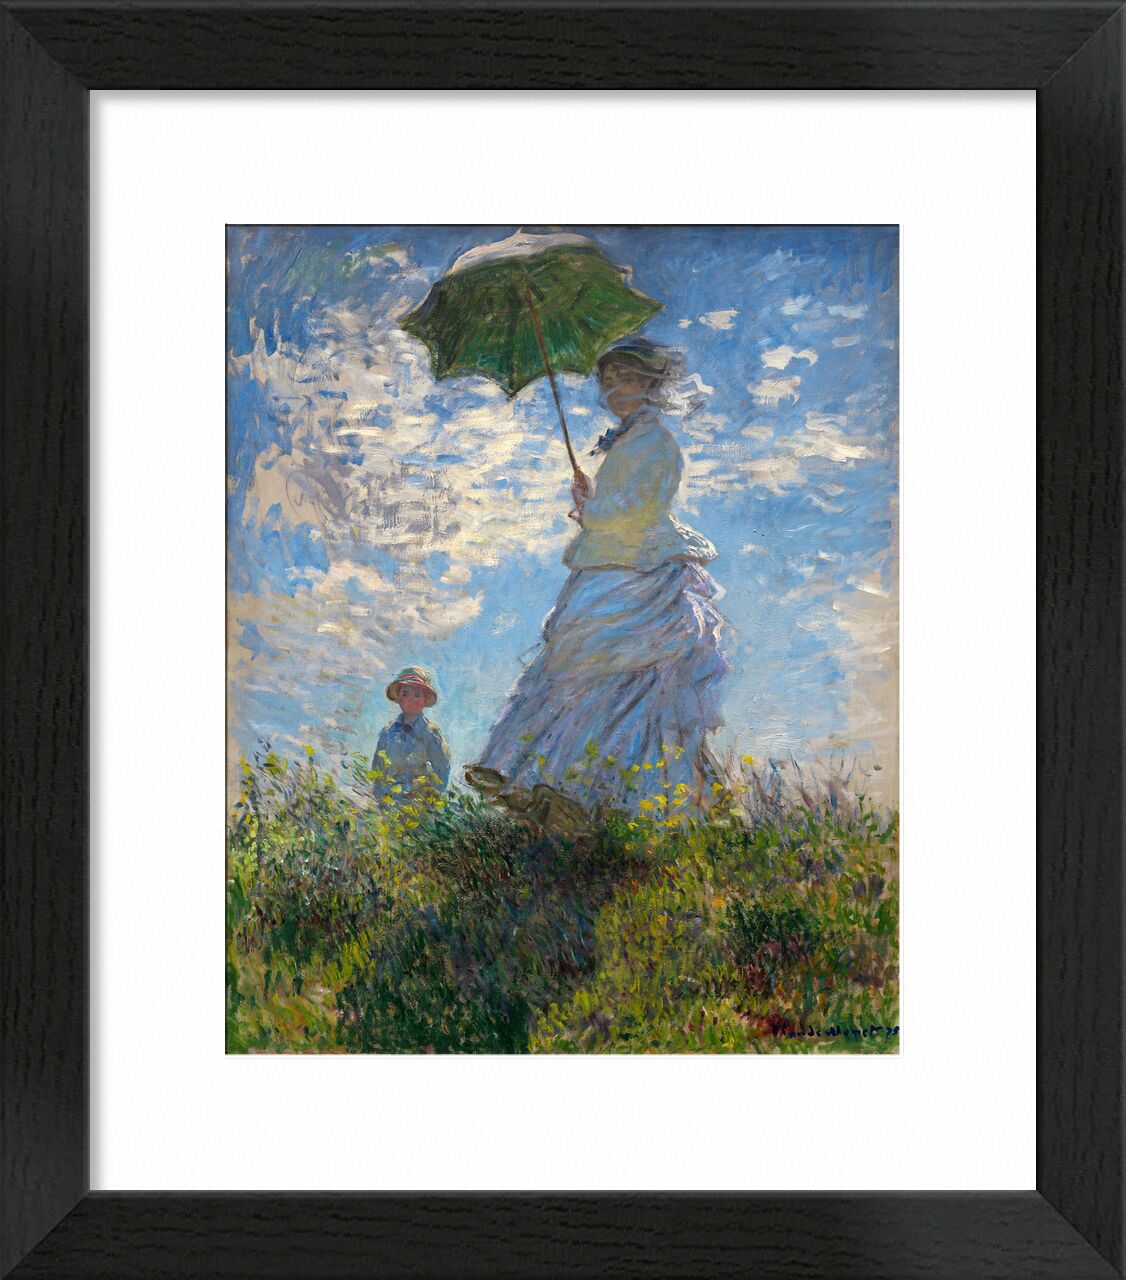 The Stroll - CLAUDE MONET 1875 von Bildende Kunst, Prodi Art, Sonnenschirm, Regenschirm, CLAUDE MONET, Wiese, blau, Wolken, Malerei, Kind, Frau